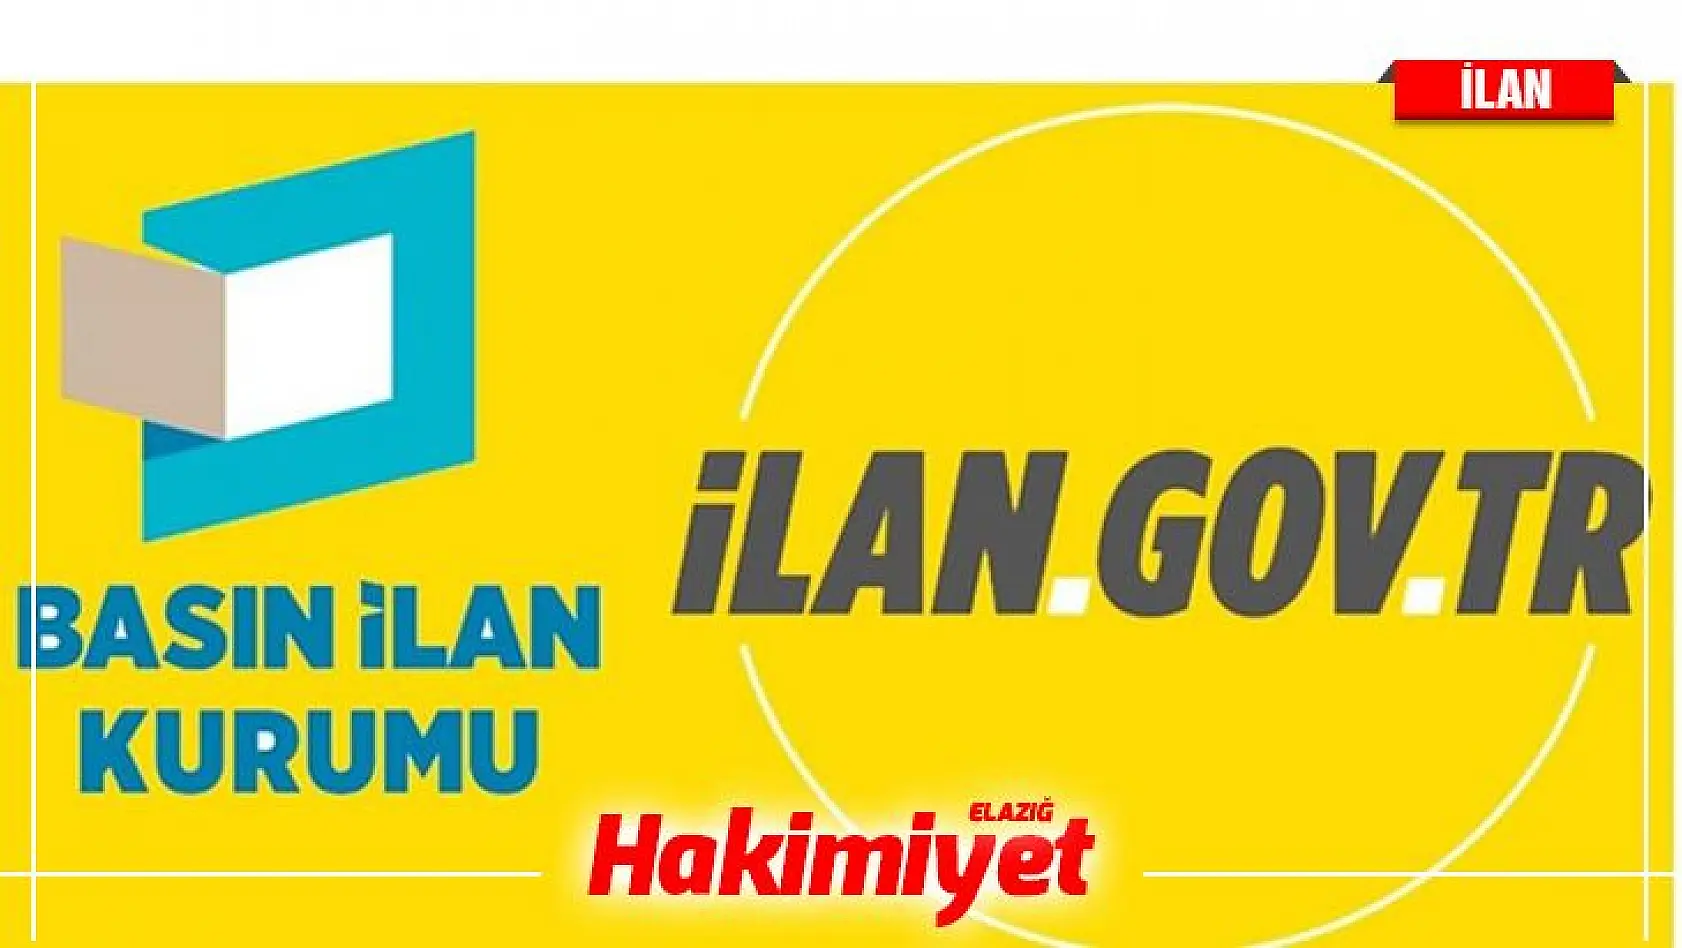 Ankara Üniversitesi Sözleşmeli Bilişim Personeli Alacak